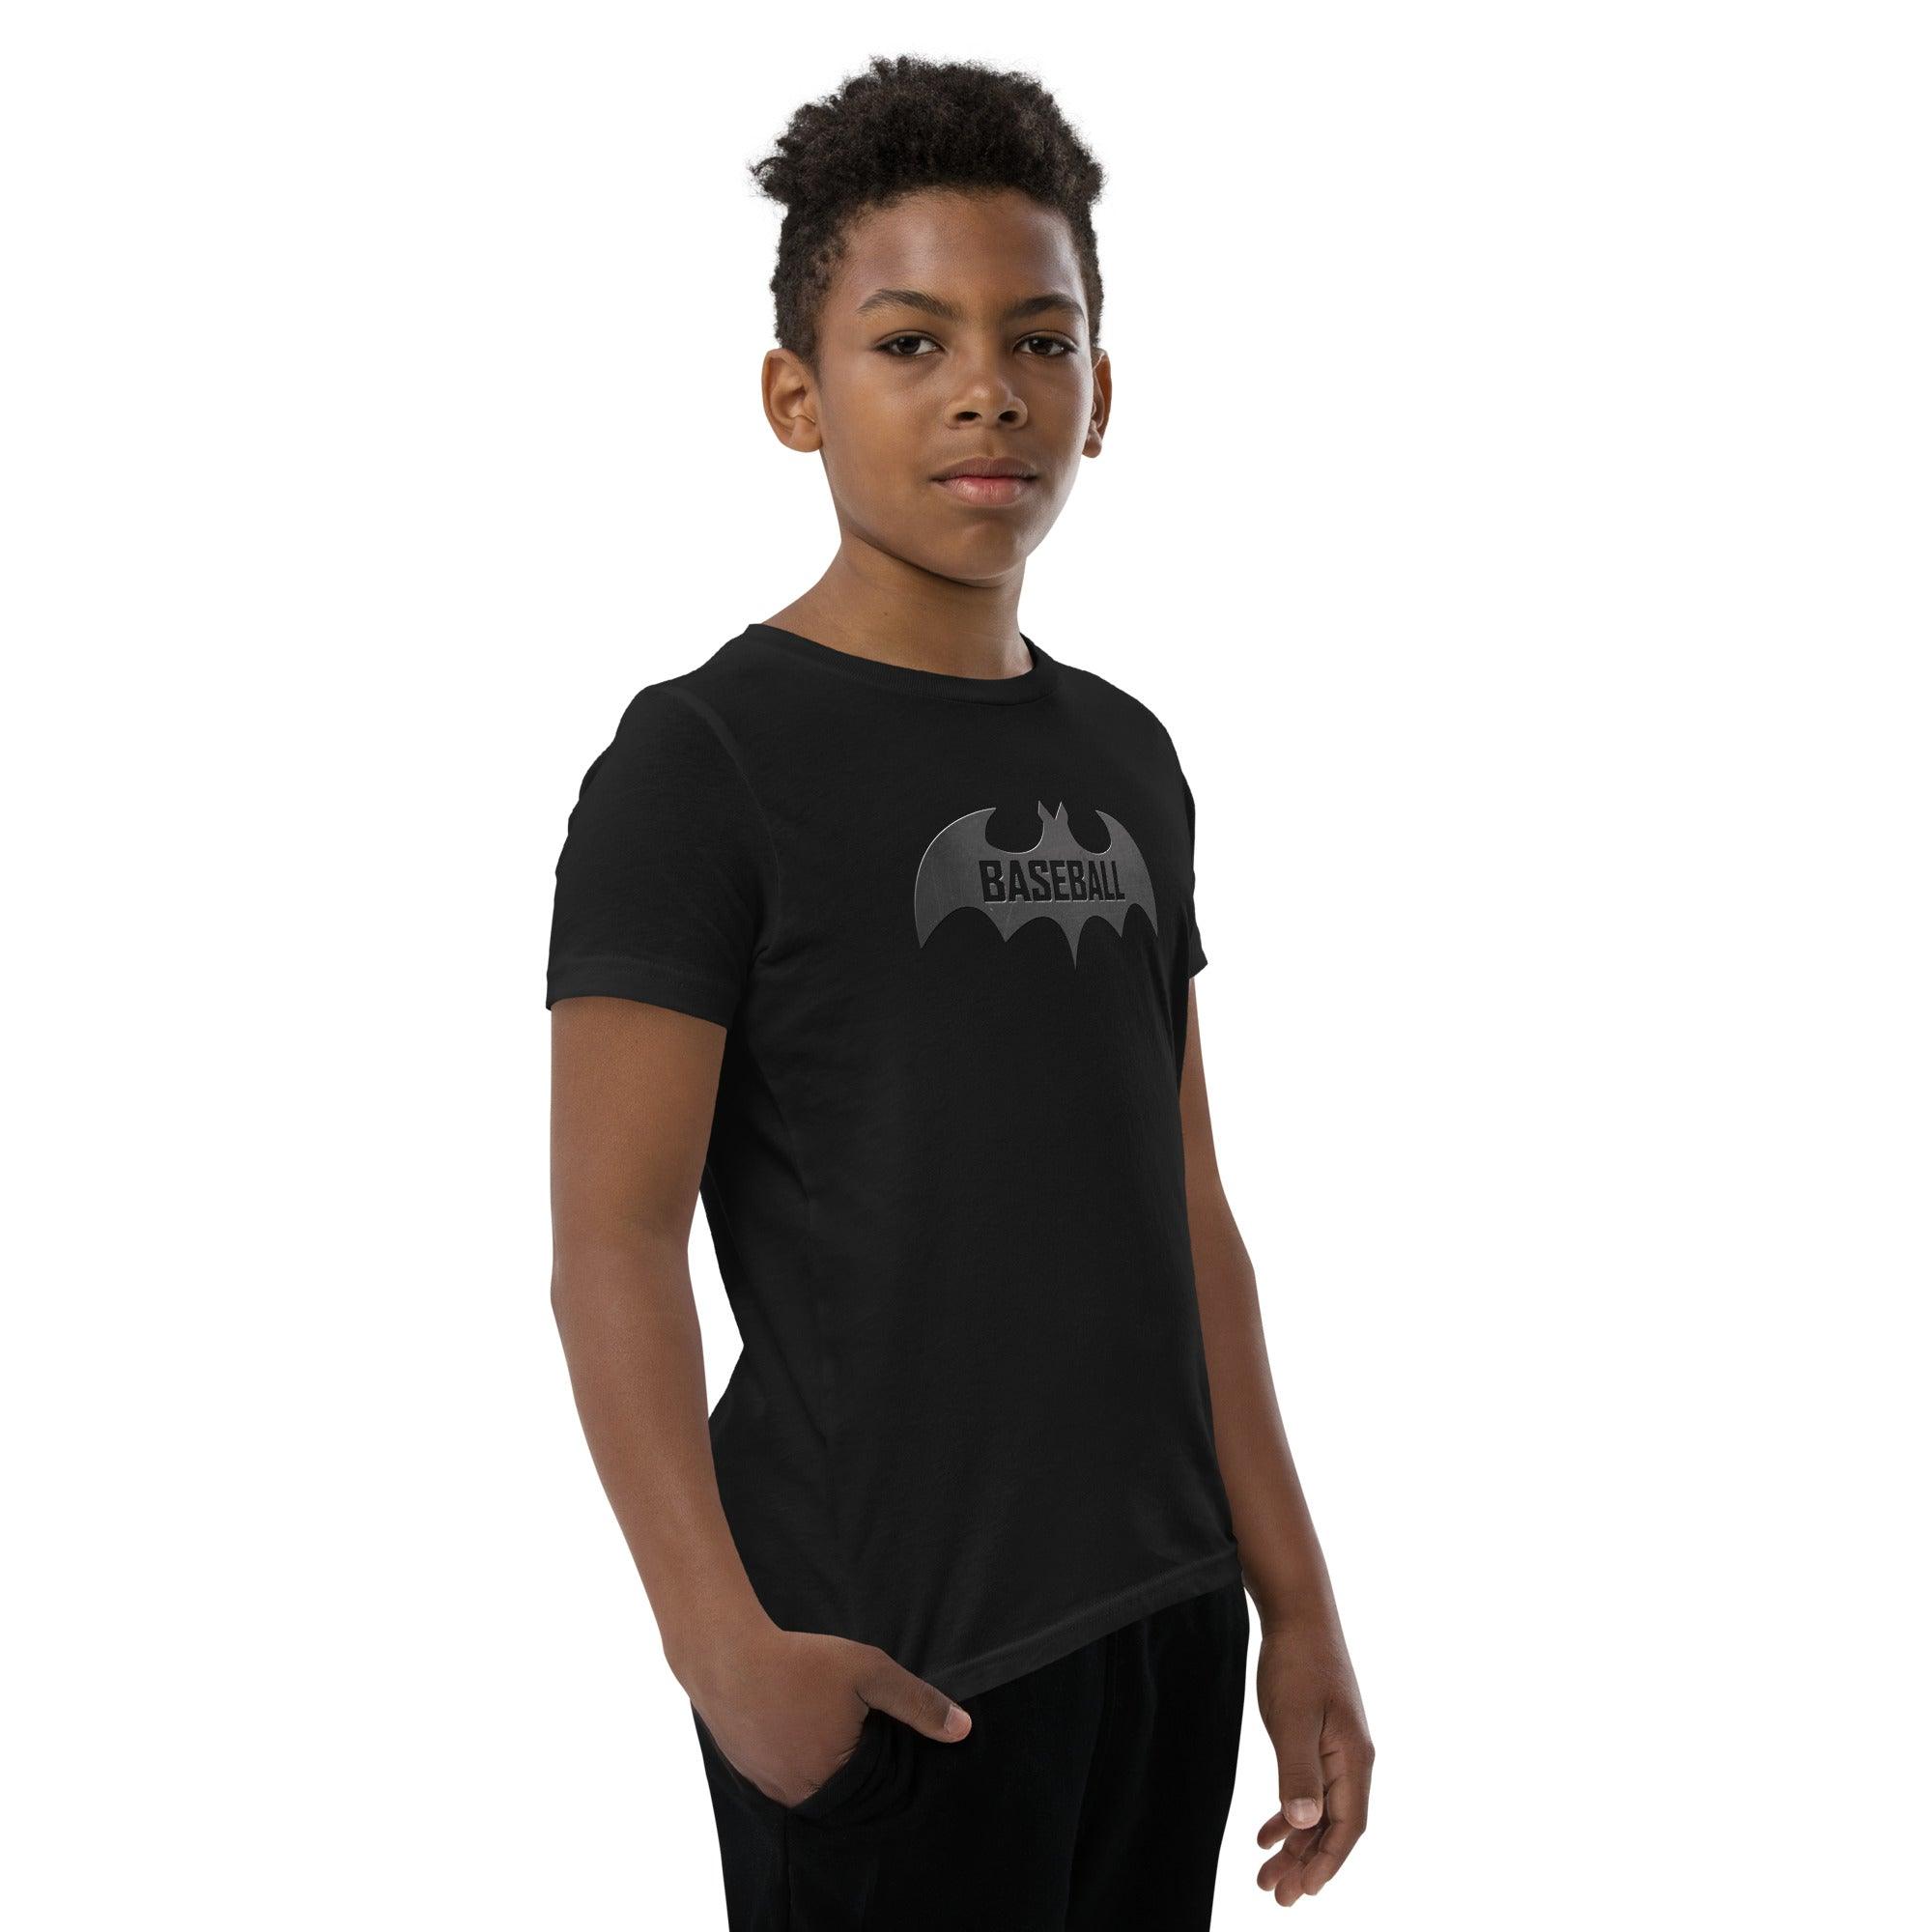 Baseball Bat Youth Short Sleeve T-Shirt